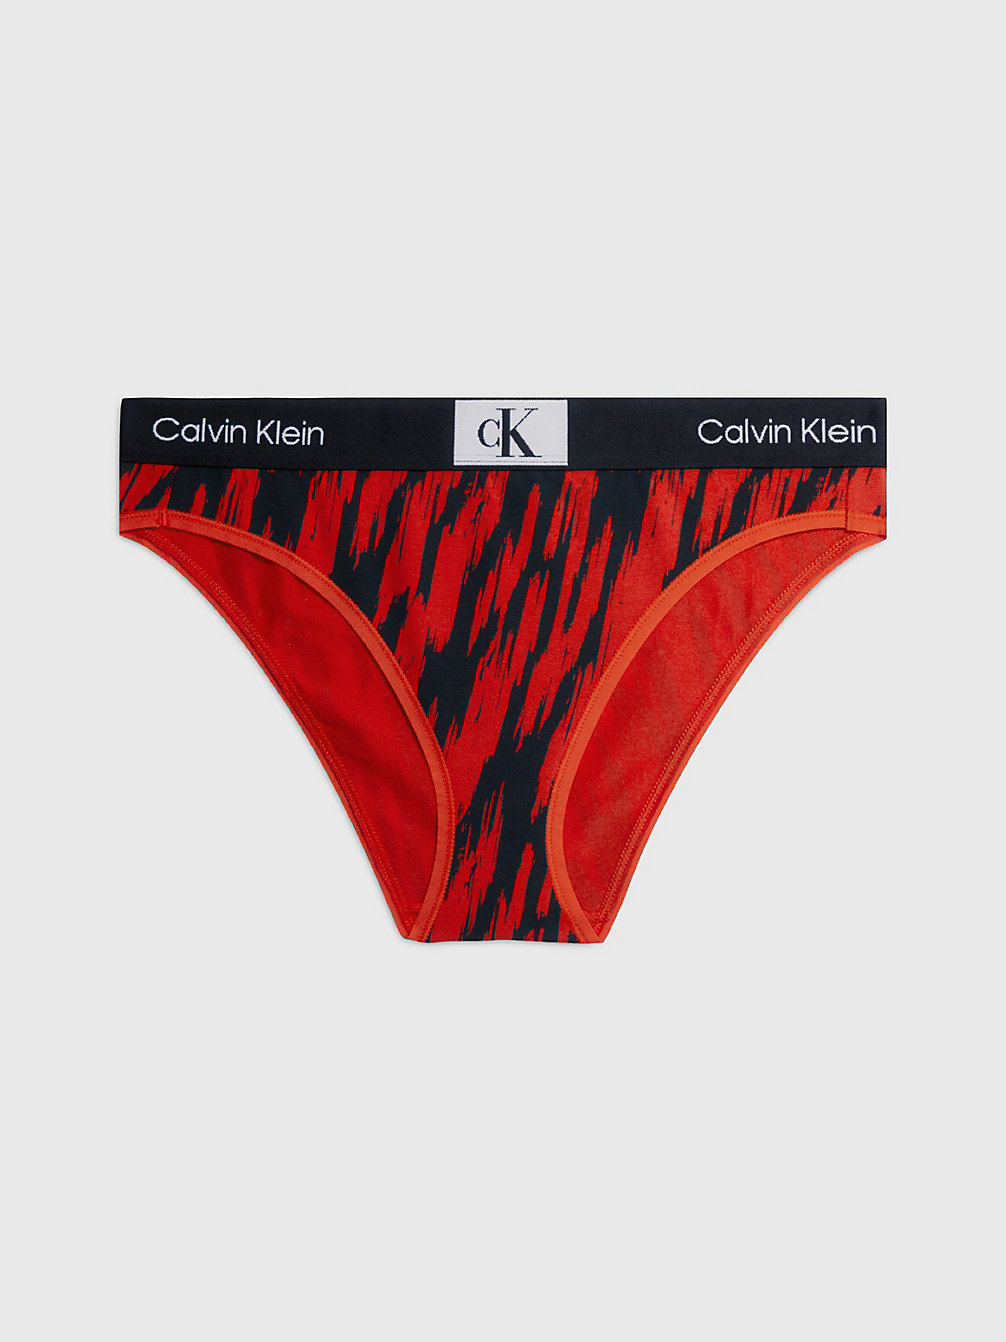 TIGER PRINT/HAZARD Culotte - Ck96 undefined femmes Calvin Klein